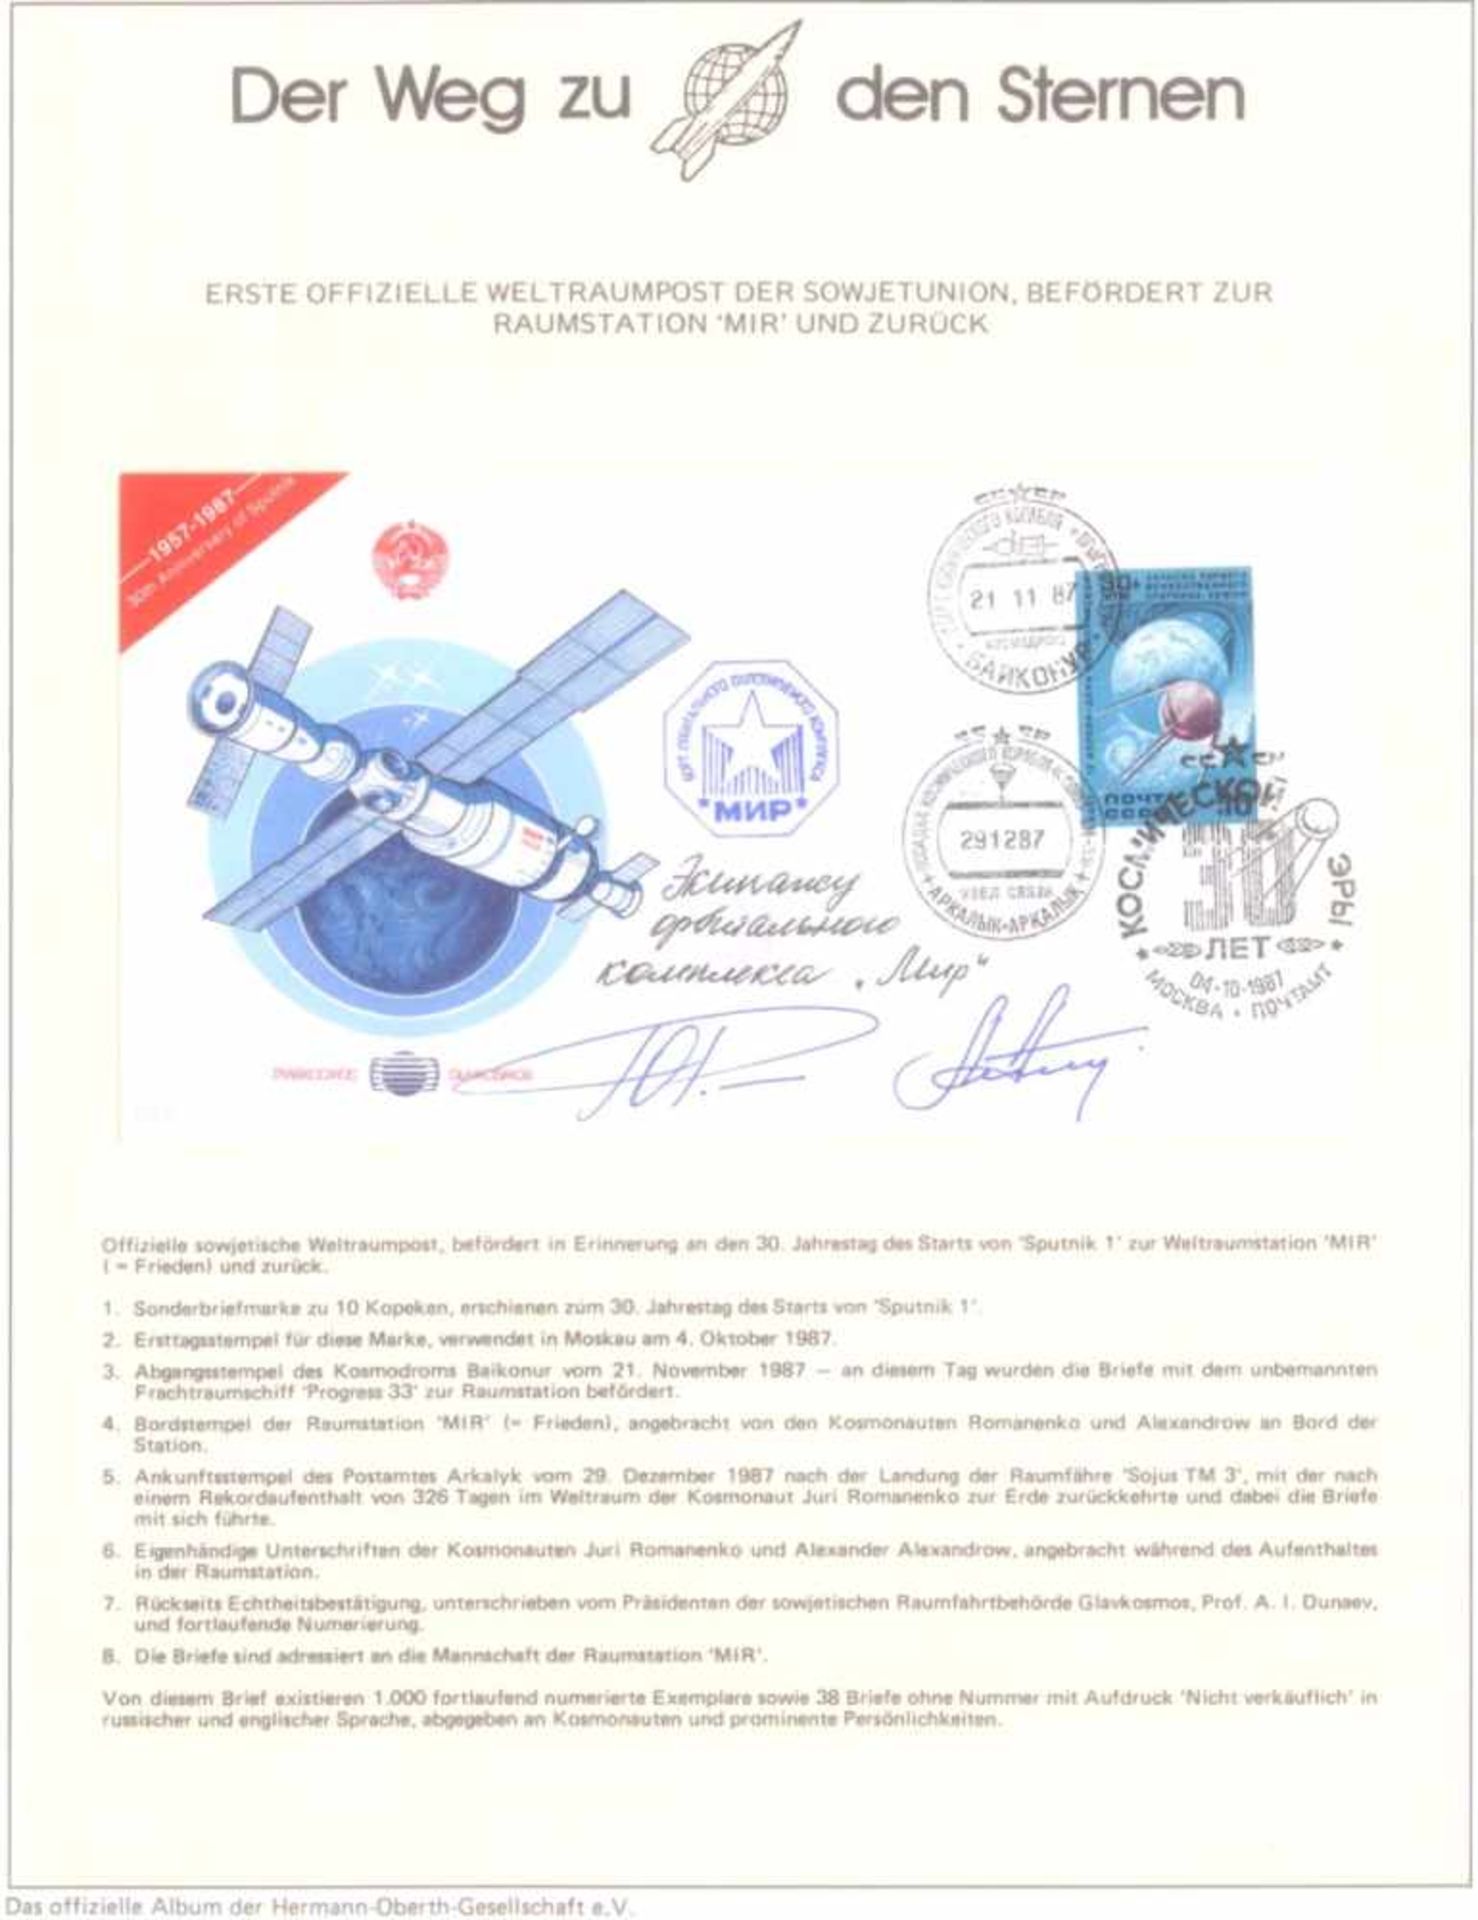 WeltraumpostErste offizielle Weltraumpost der Sowjetunion, befördert zurWeltraumstation MIR und - Image 3 of 7